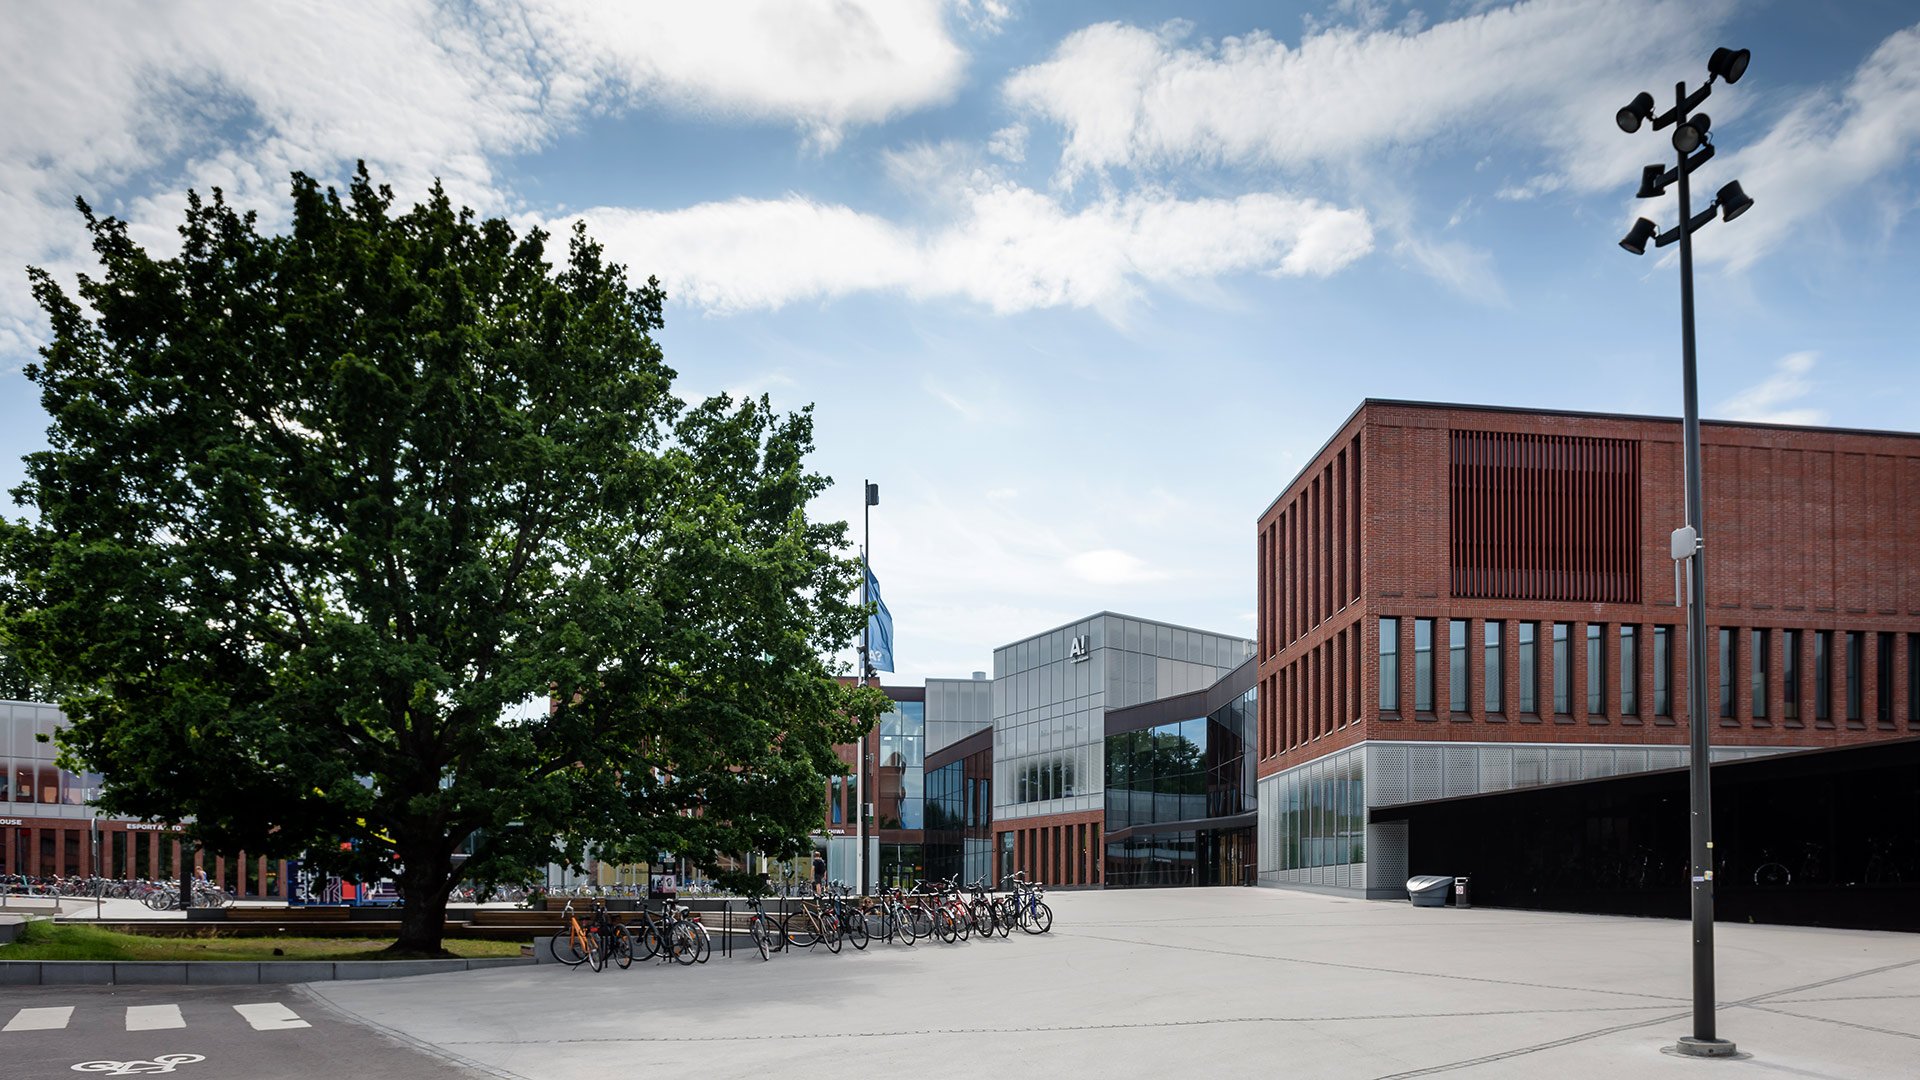 Espoon Otaniemessä sijaitseva Aalto-yliopiston uusi päärakennus Väre oli laaja hanke. Allianssimallilla toteutetussa hankkeessa kaikki osapuolet puhalsivat yhteen hiileen.